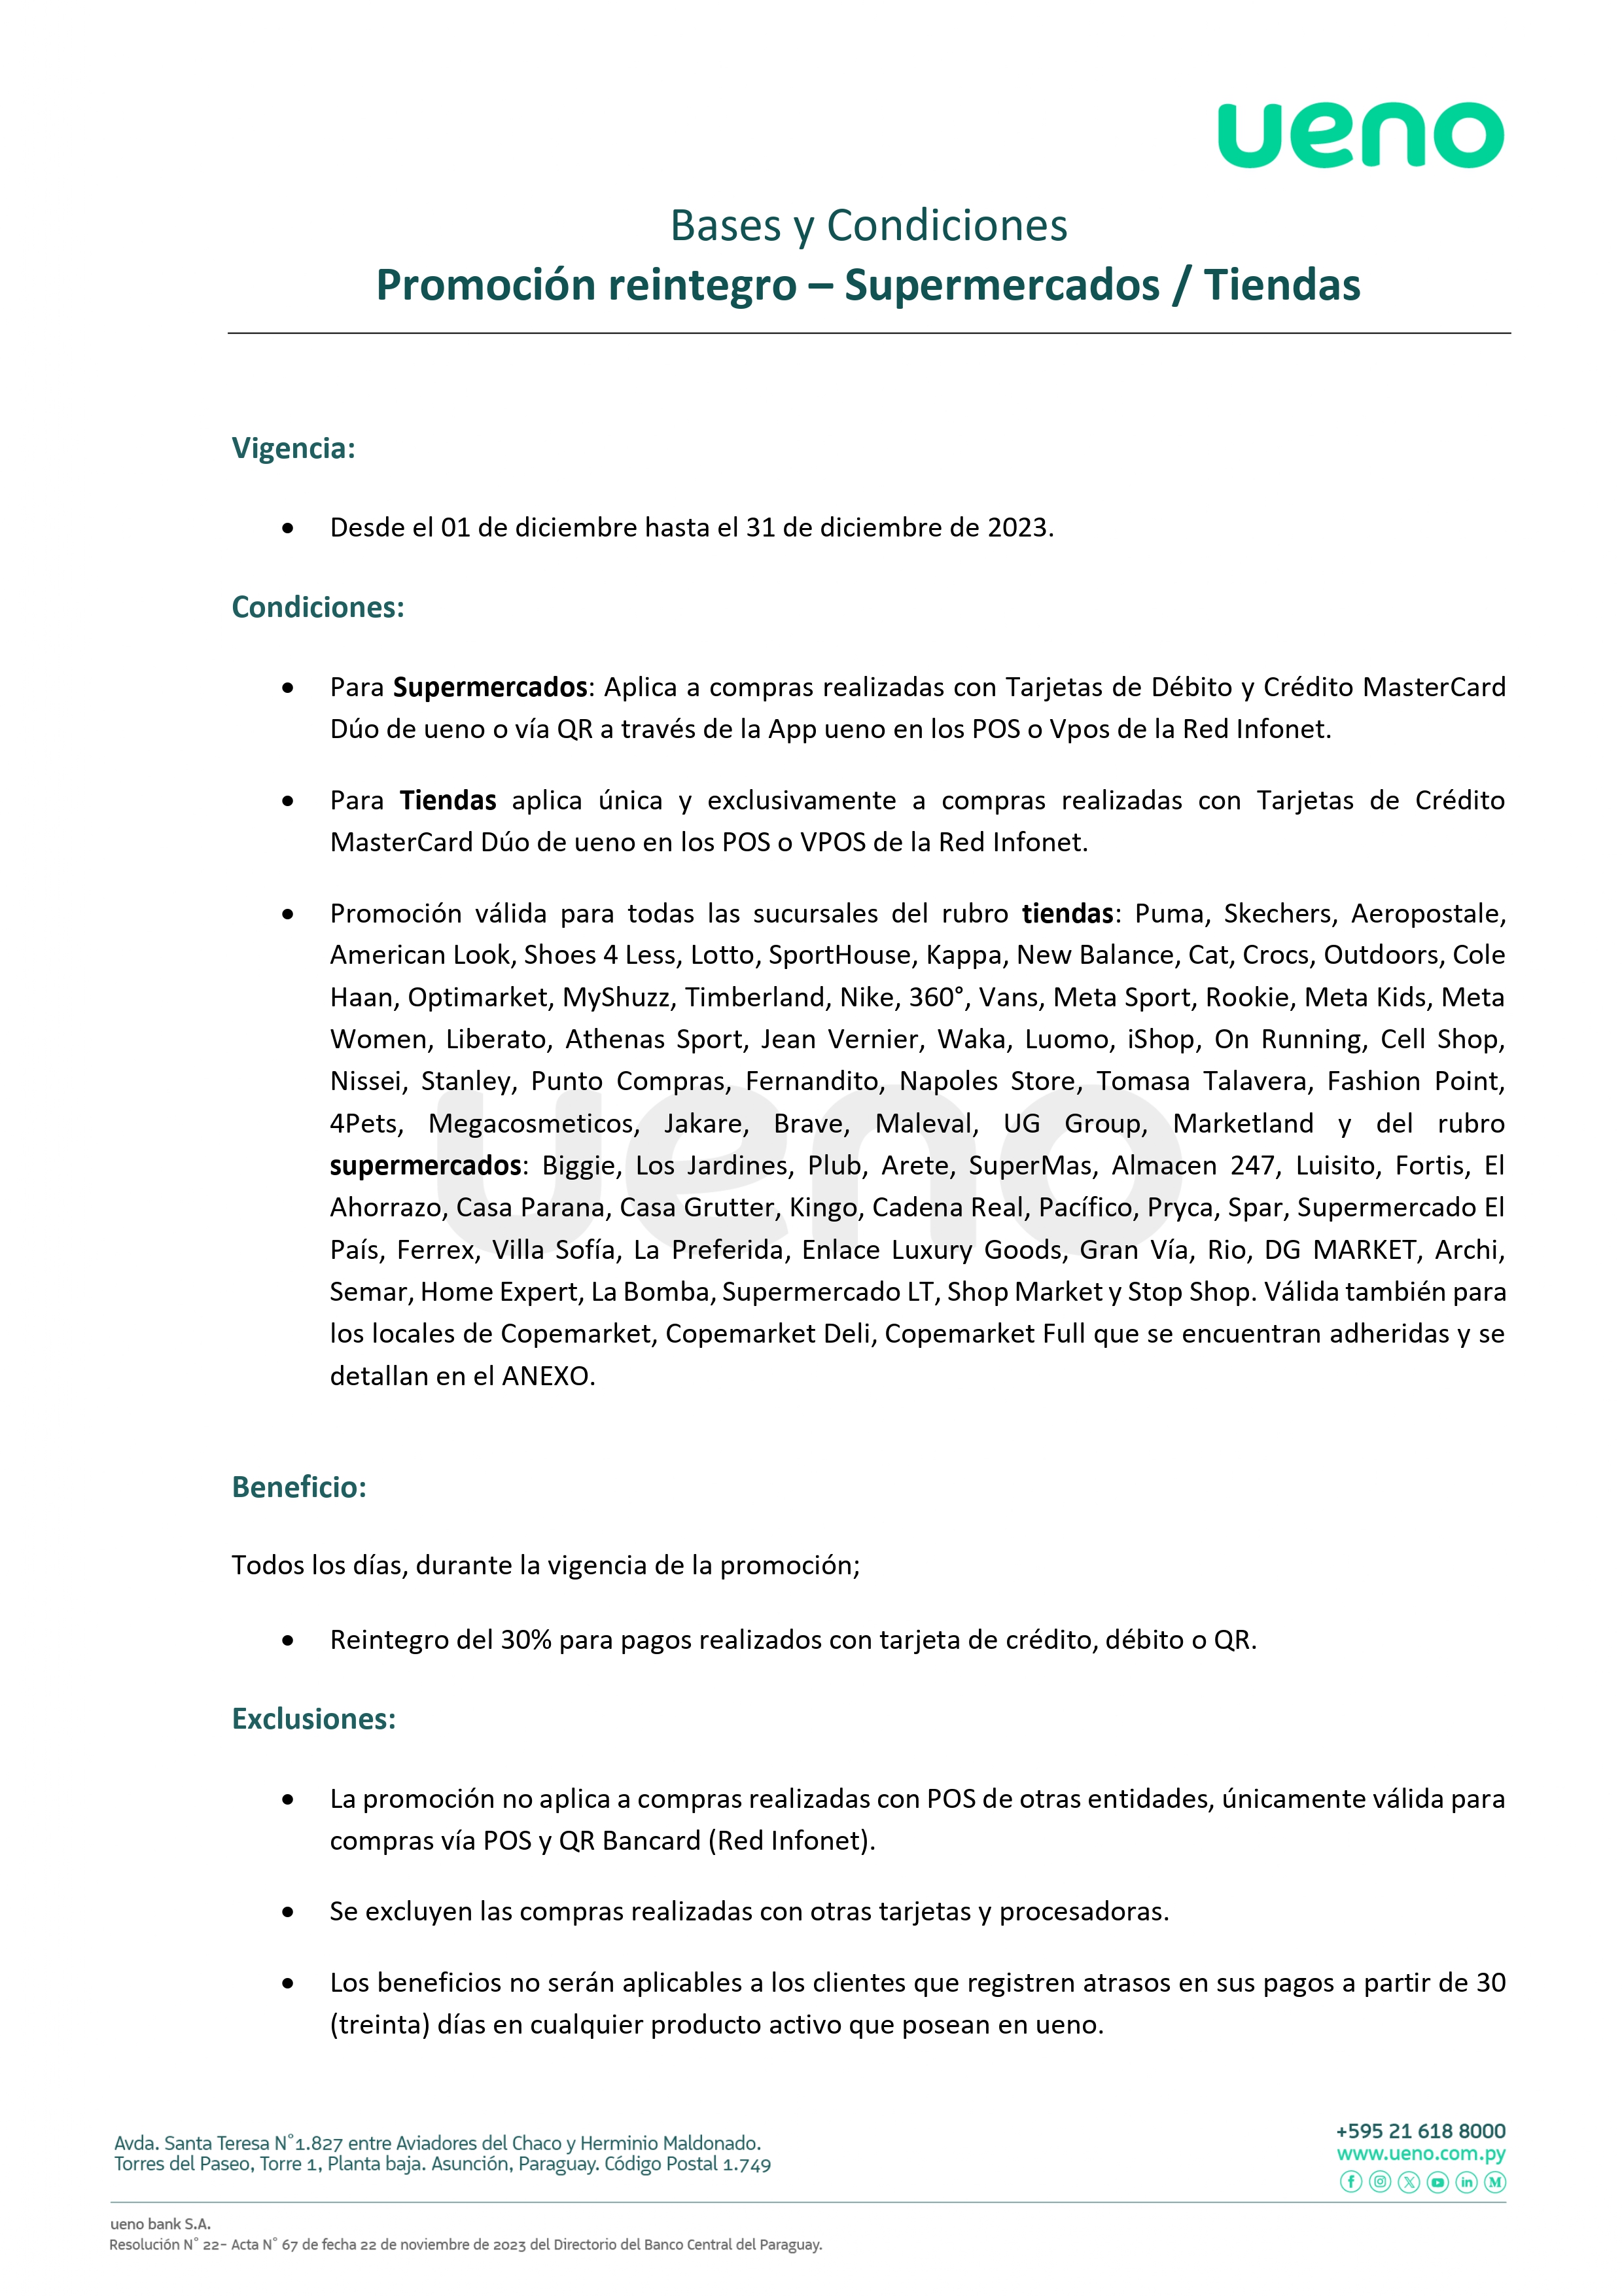 ByC - SUPERMERCADOS-TIENDAS- DICIEMBRE2023-MODIFICADO (1)_page-0001.jpg